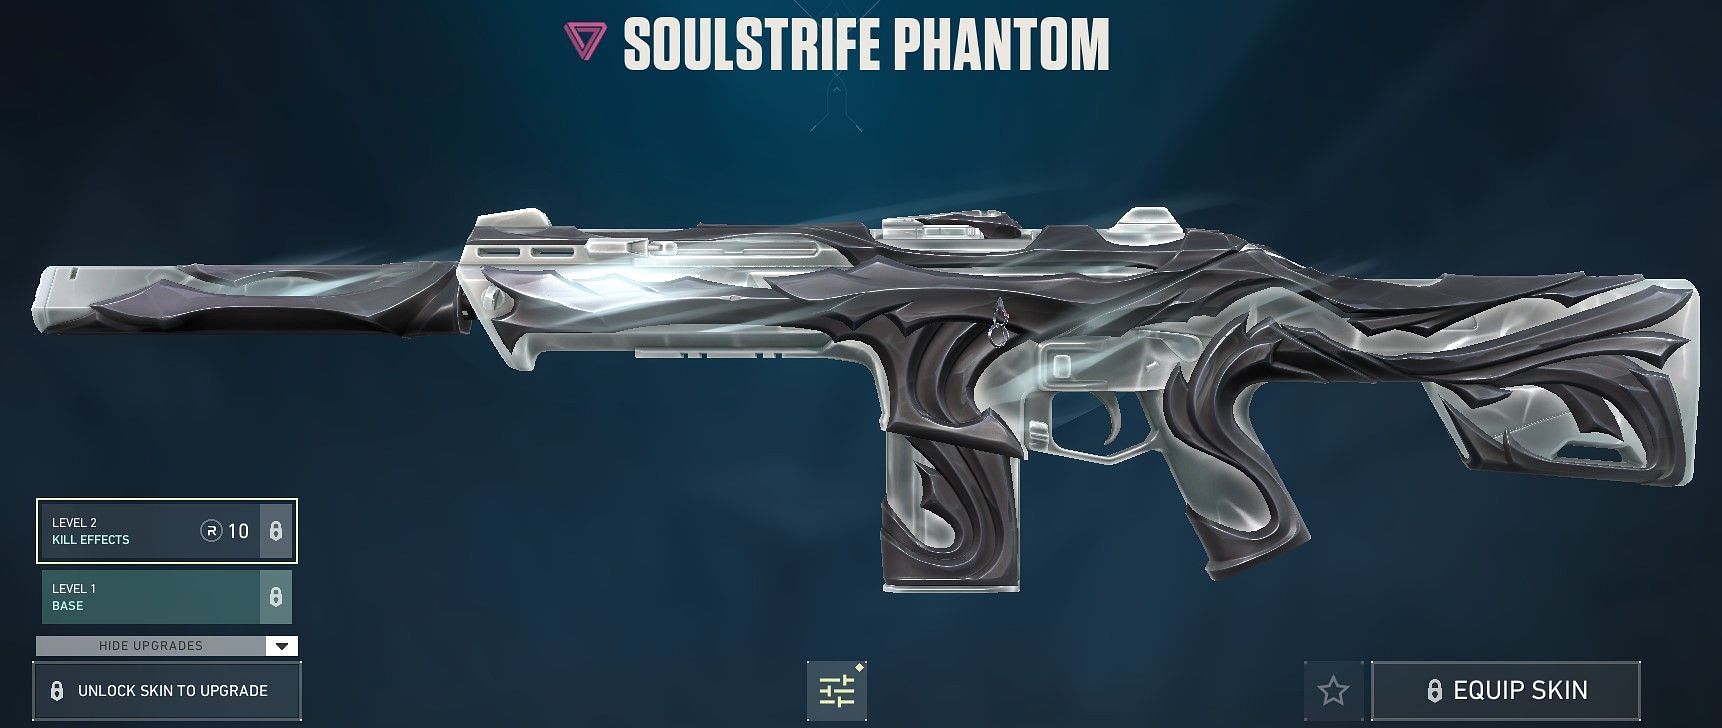 Soulstrife Phantom (Image via Riot Games)